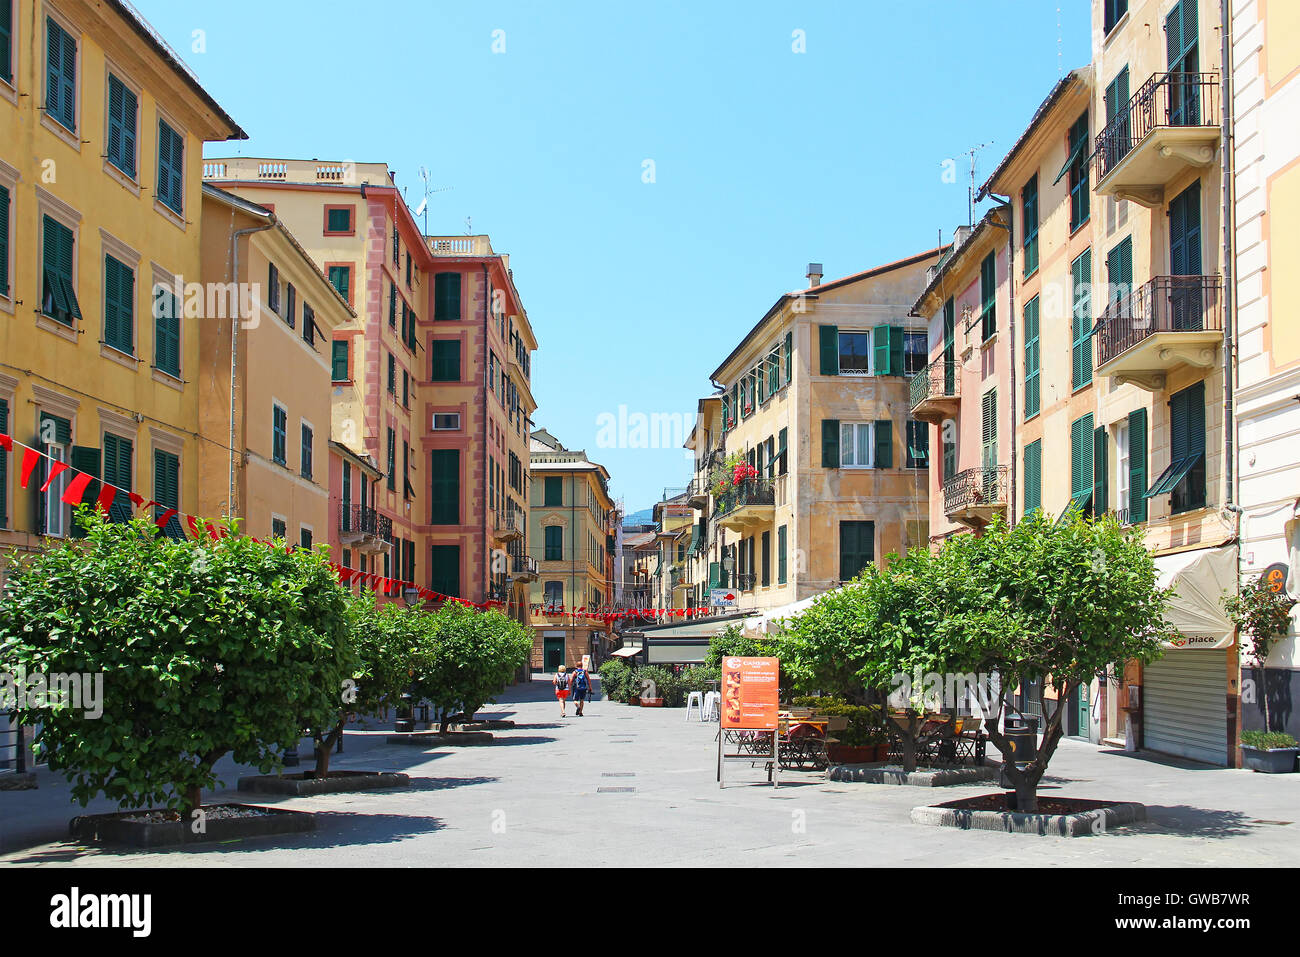 RAPALLO, ITALIE - 28 juin 2016 : Vieille ville de Rapallo resort dans la province de Gênes sur la côte de la mer Ligurienne Banque D'Images